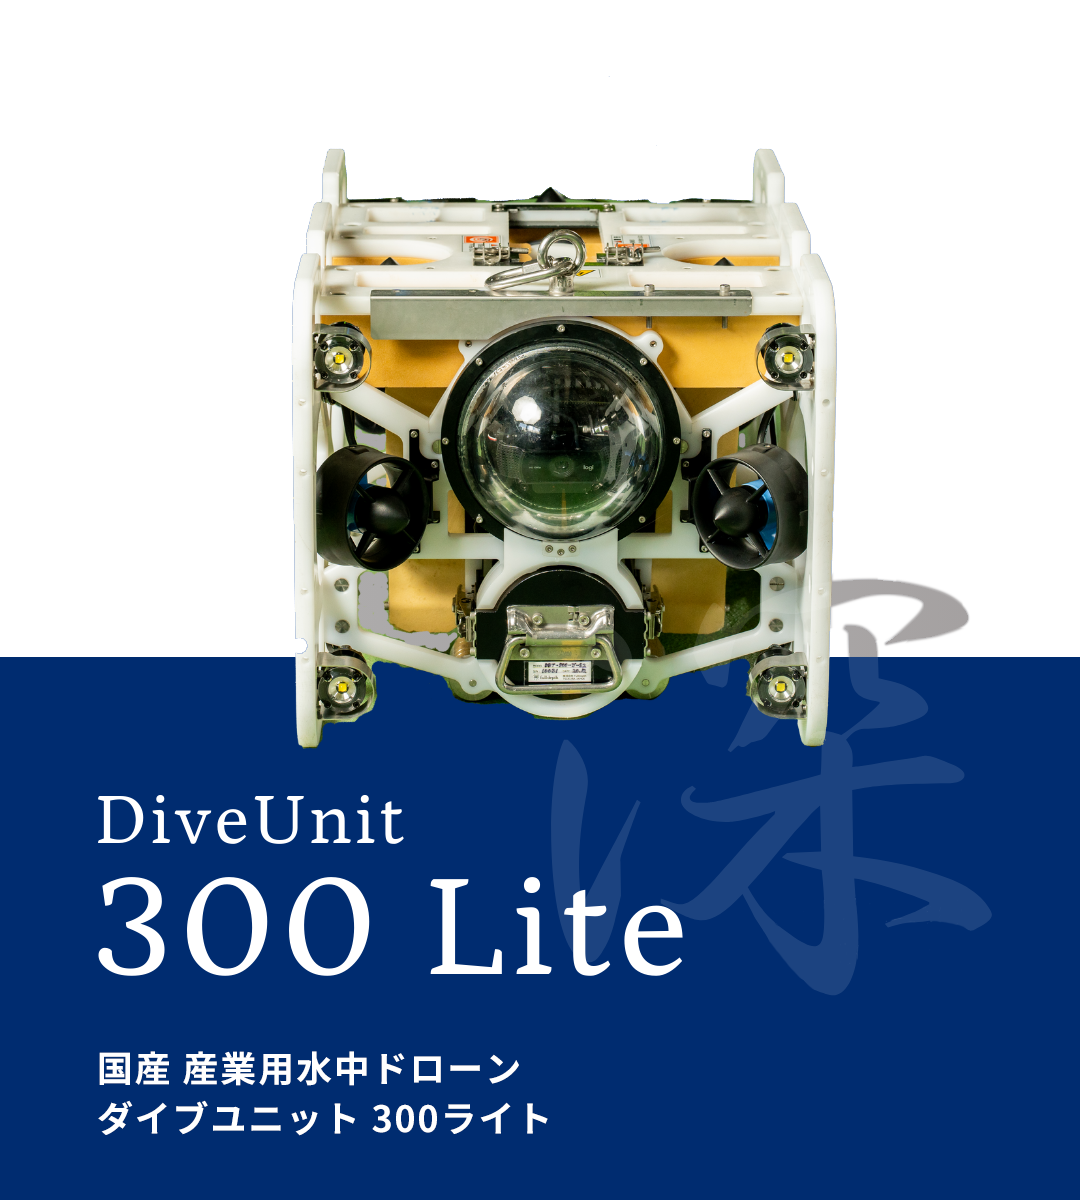 国産産業用水中ドローン DiveUnit 300Lite